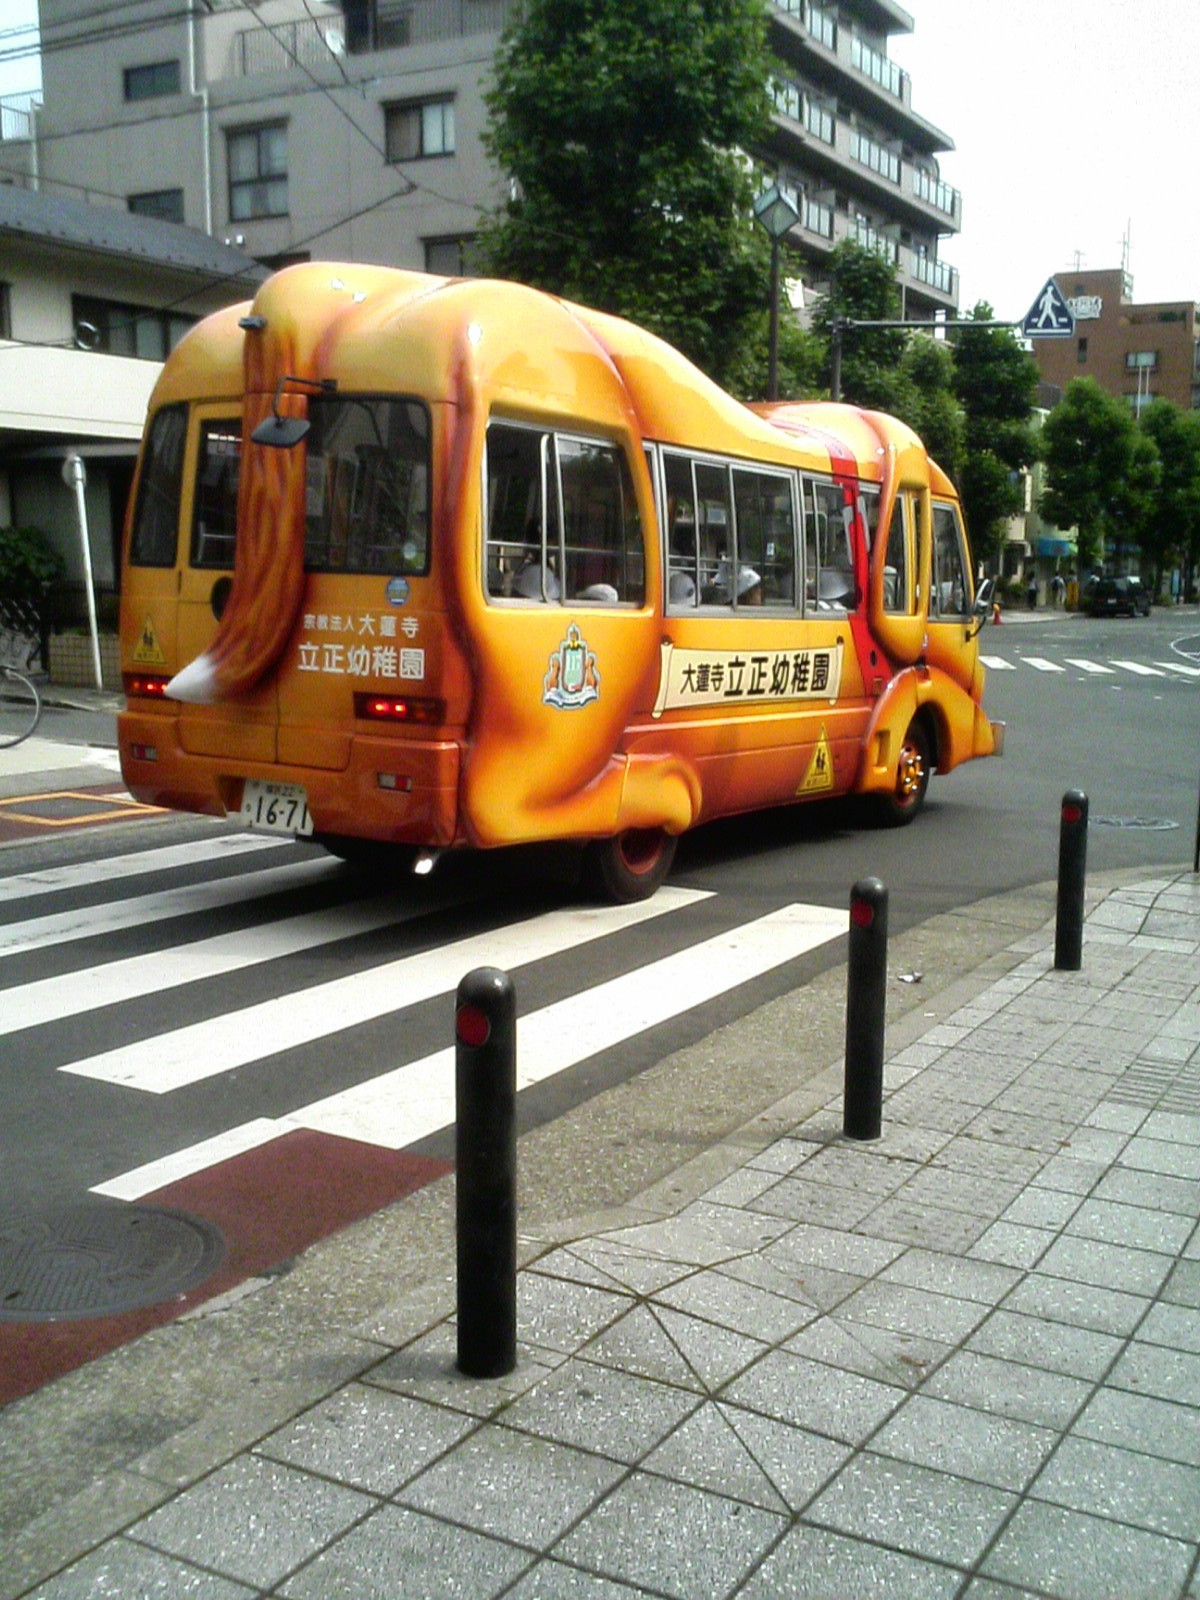 school bus in japan